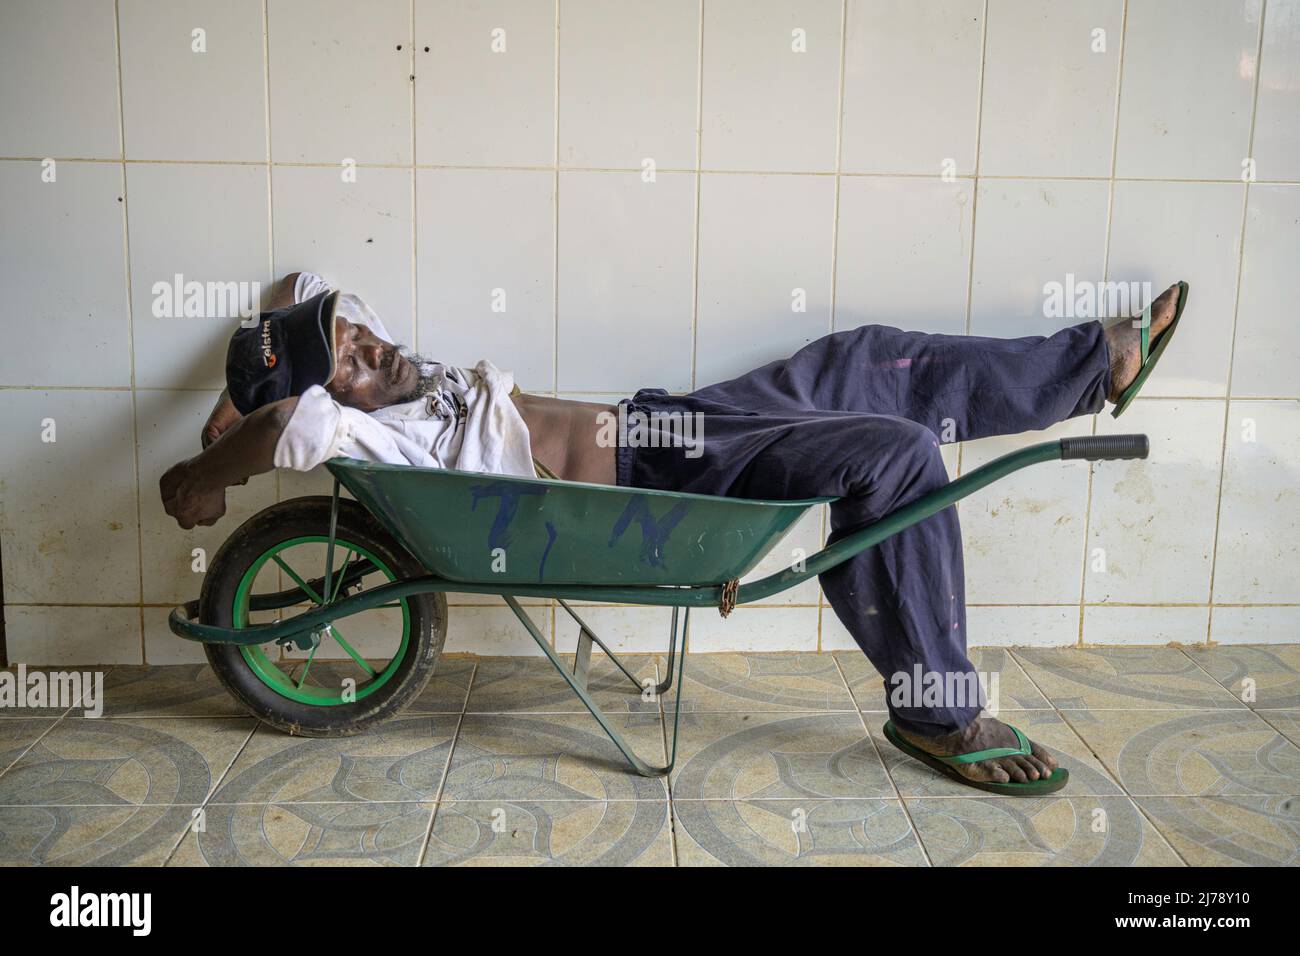 A porter sleeping soundly on a wheelbarrow in the Bobo Forro market. Stock Photo